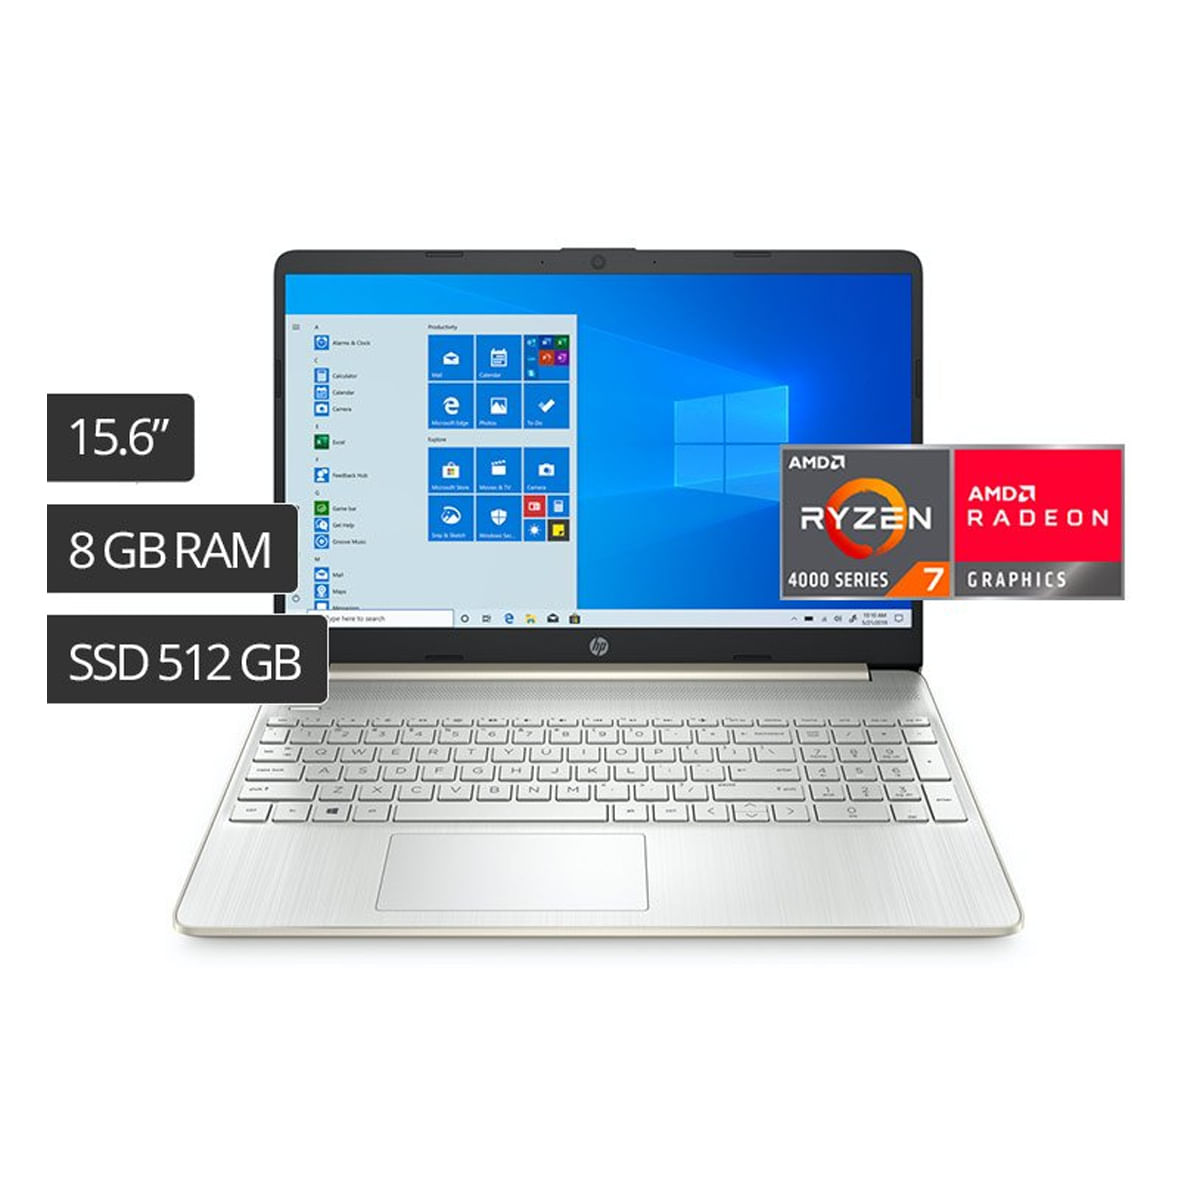 Laptop Hp 15-ef1020la 15.6" Amd Ryzen 7 SSD 512Gb Ran 8Gb Win 10